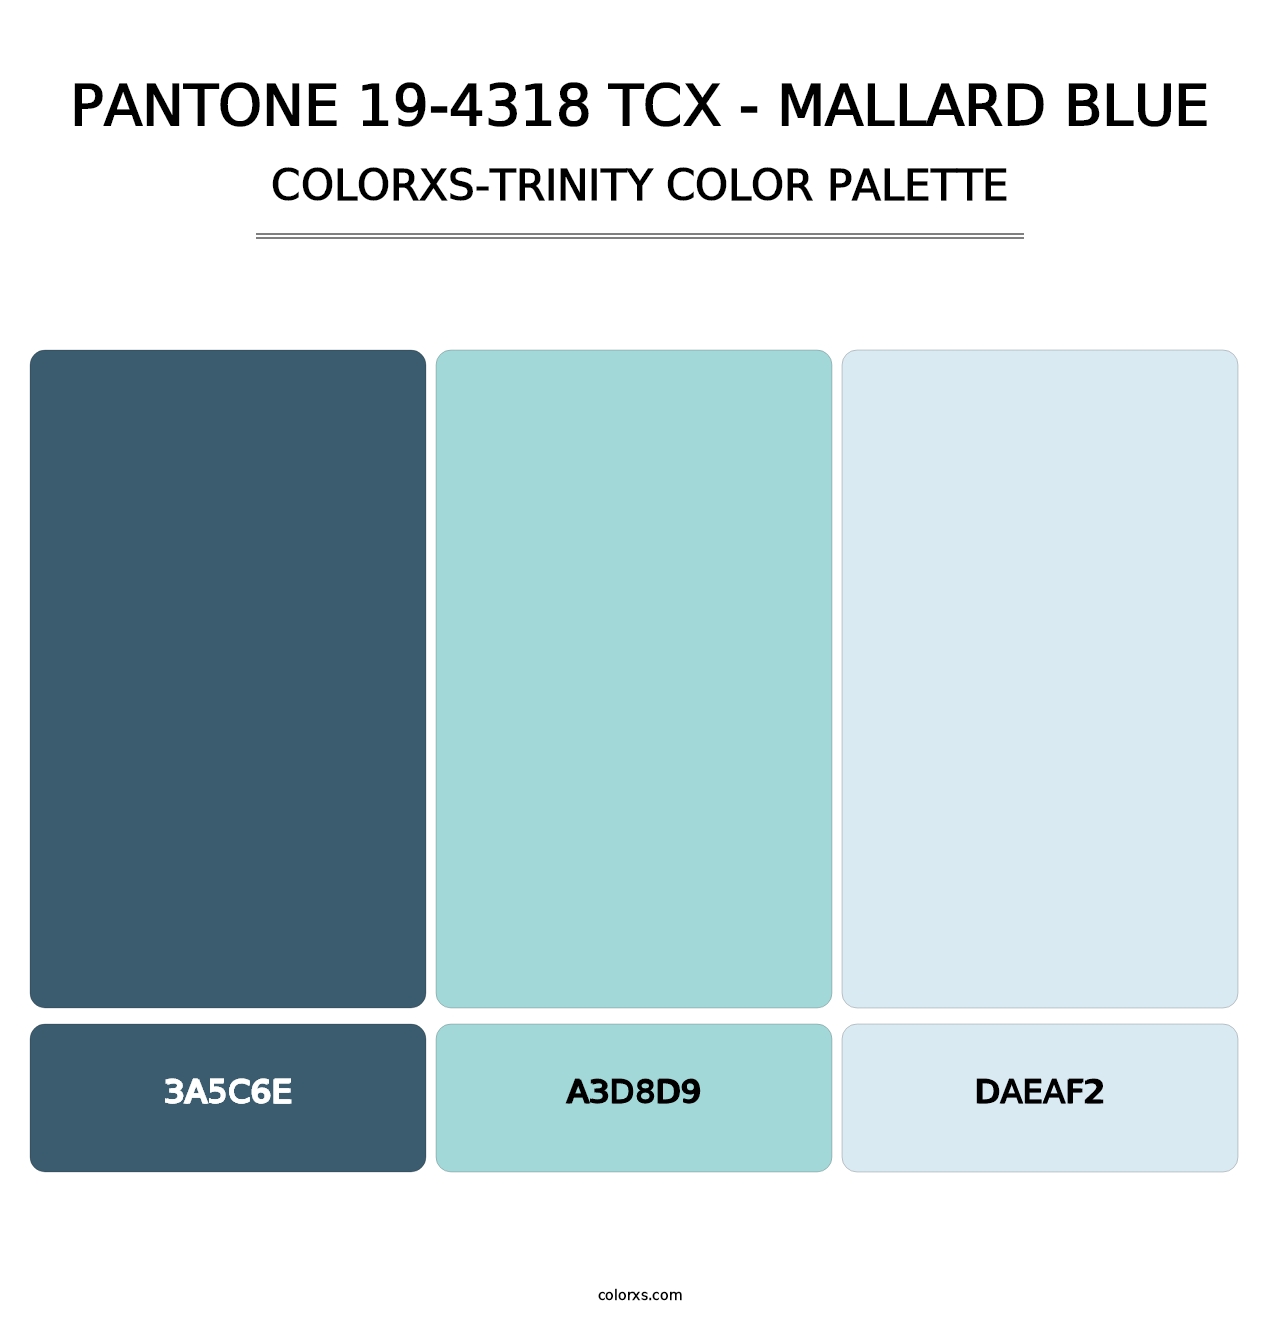 PANTONE 19-4318 TCX - Mallard Blue - Colorxs Trinity Palette